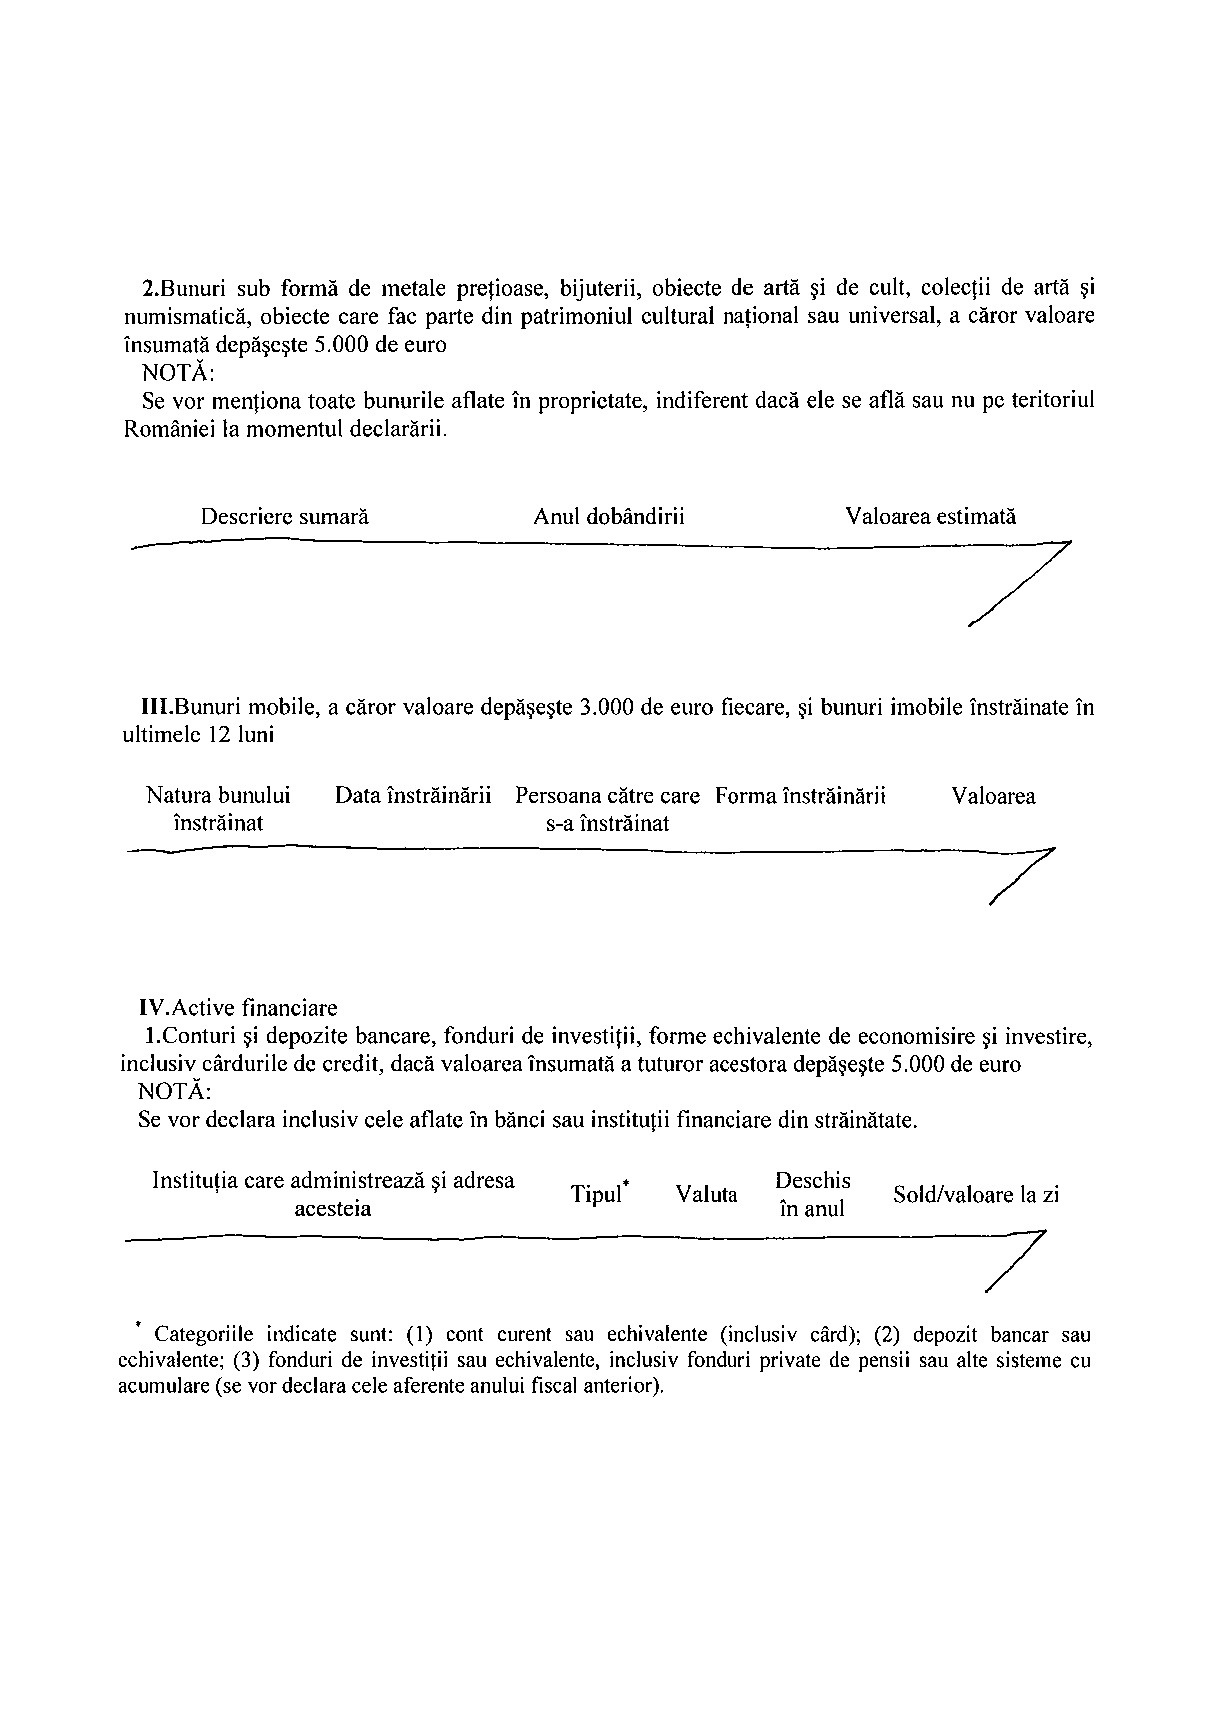 Declaratia de avere si de interese din data 25.06.2012 - pagina 2 din 6